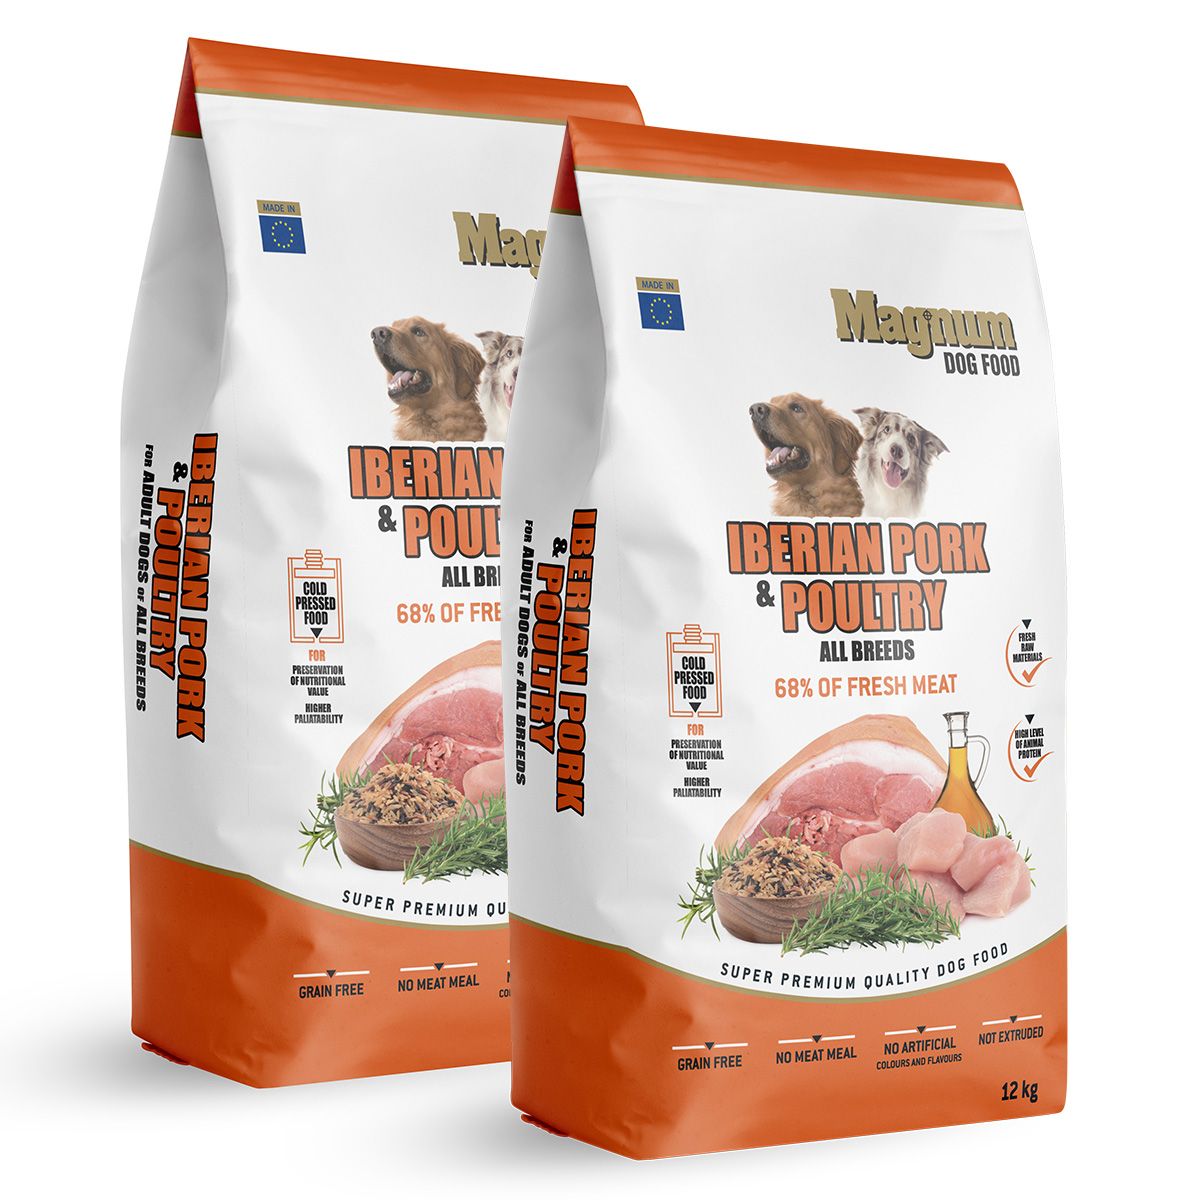 Magnum Iberian Pork & Poultry All Breed 2x12kg Magnum dog food